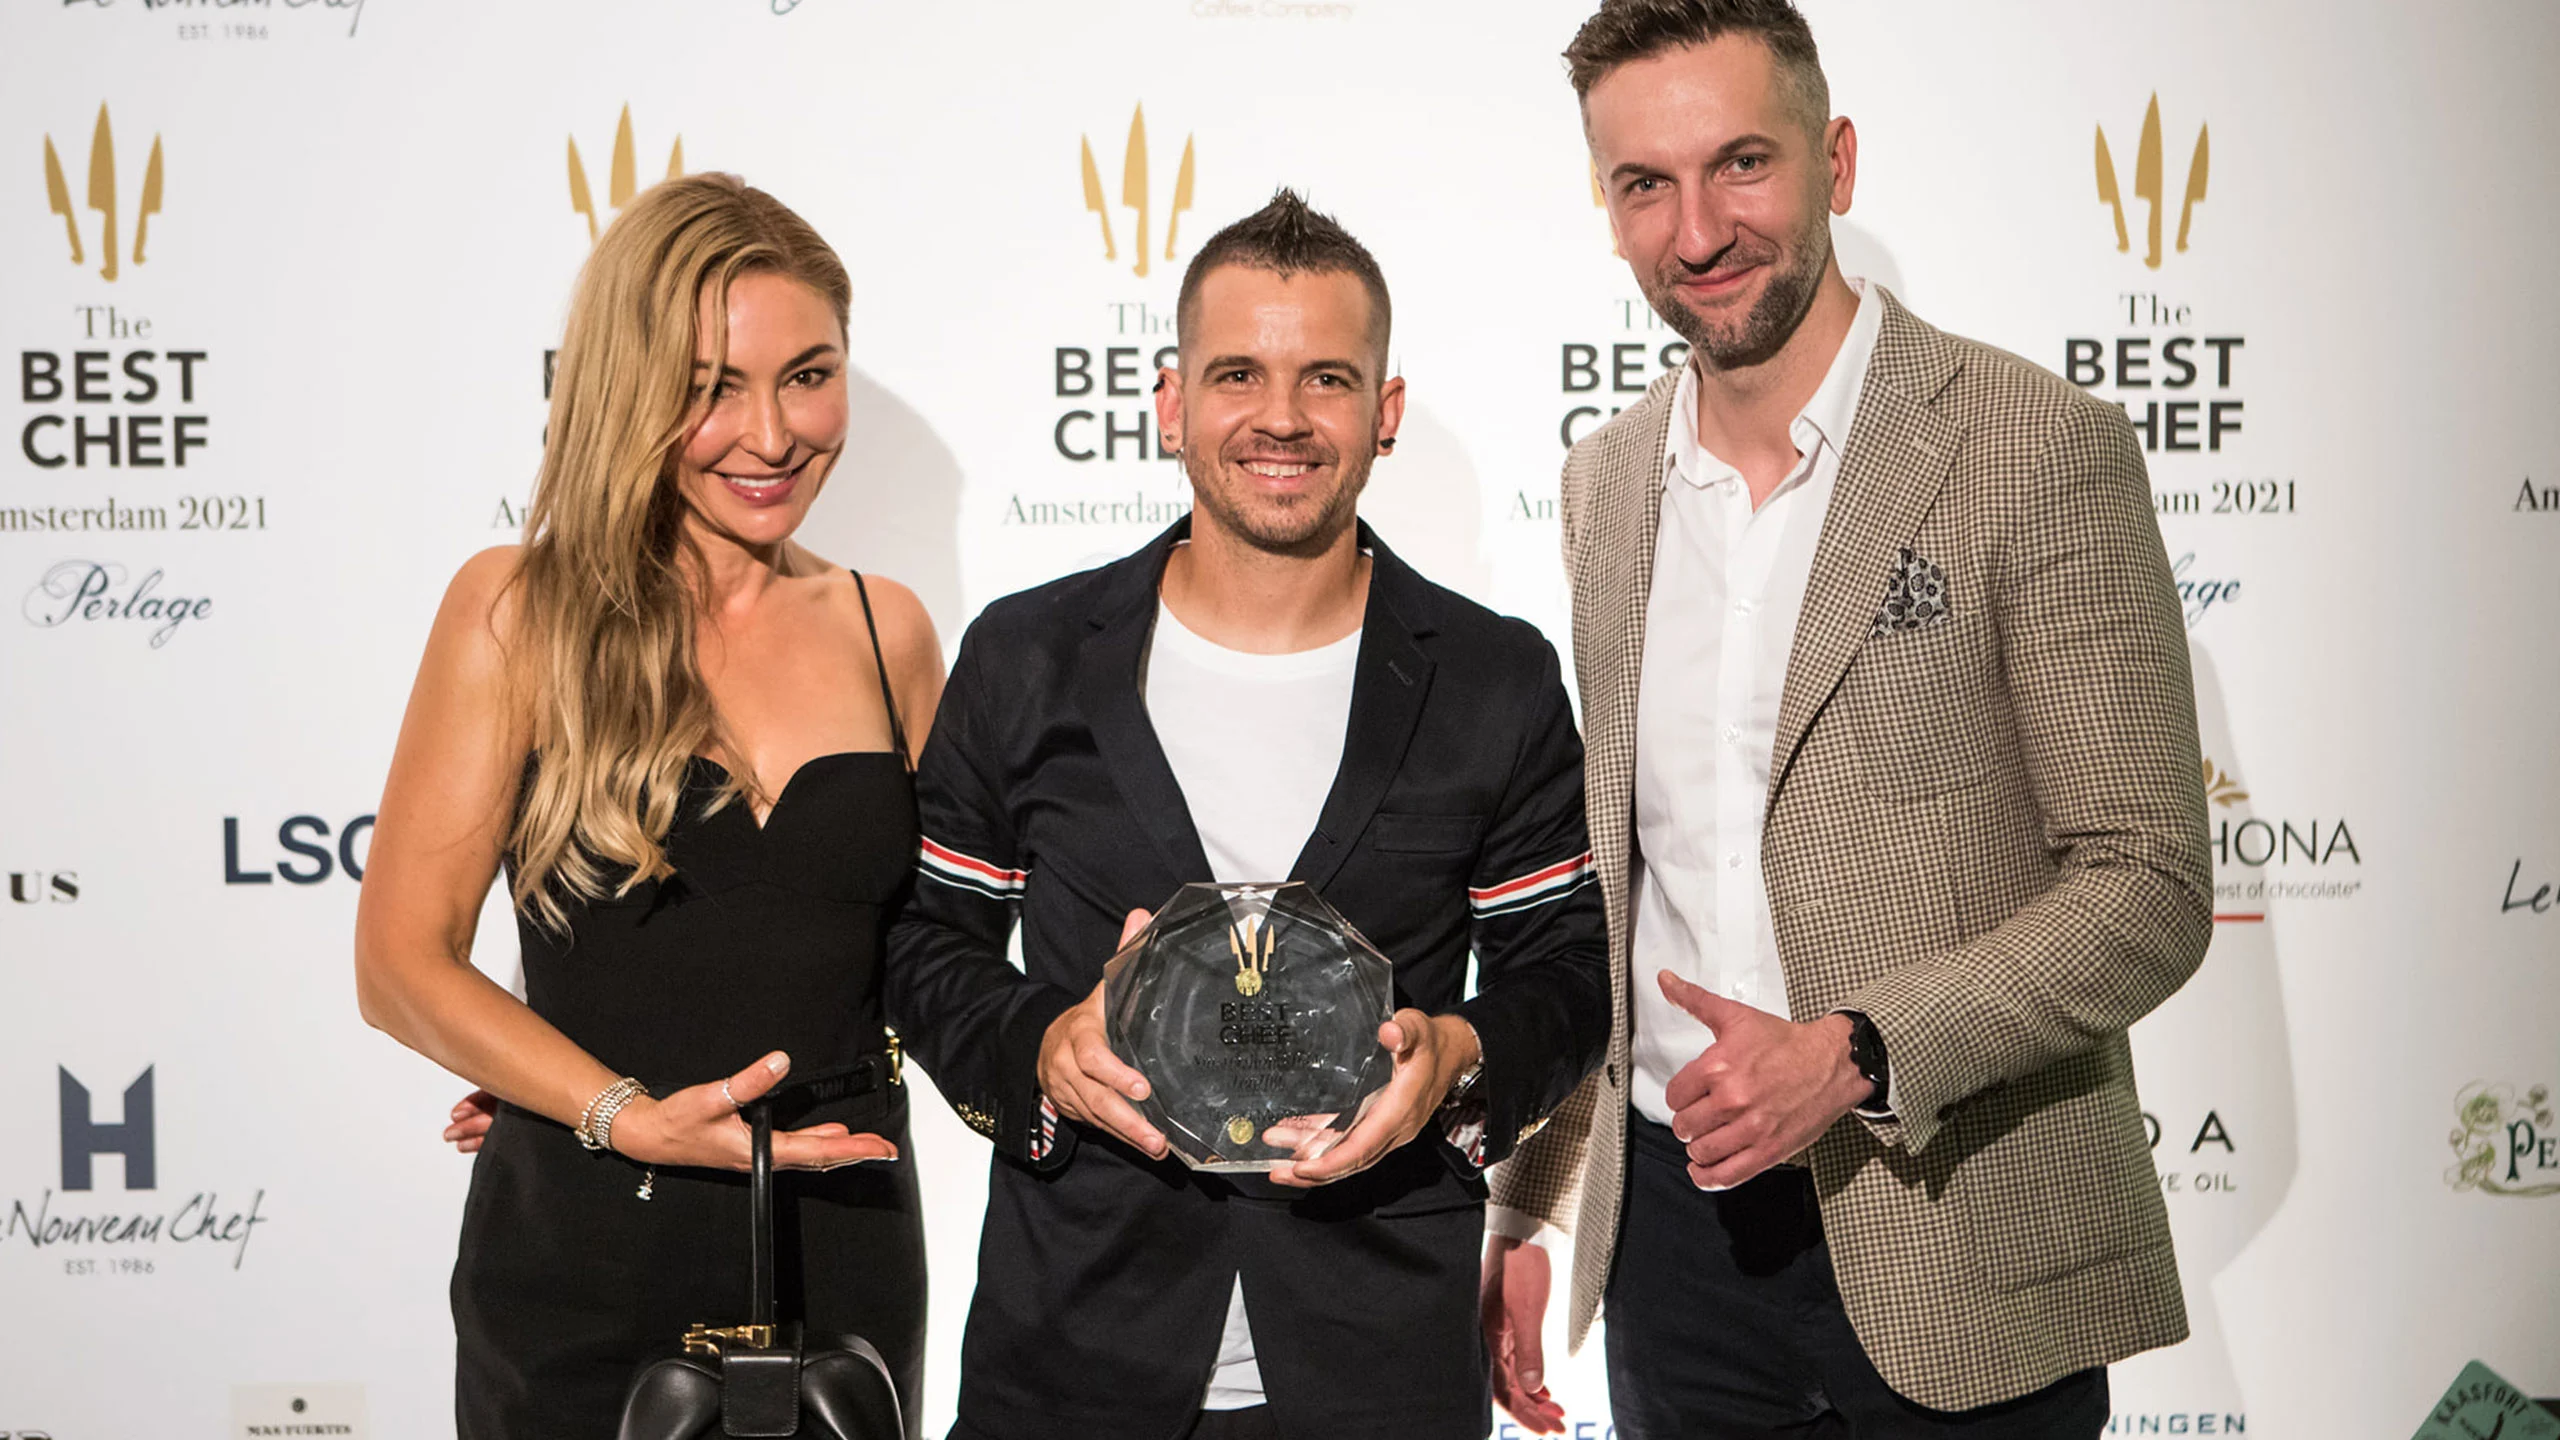 Dabiz Muñoz es nombrado el mejor chef del 2021 por “The Best Chef Awards”